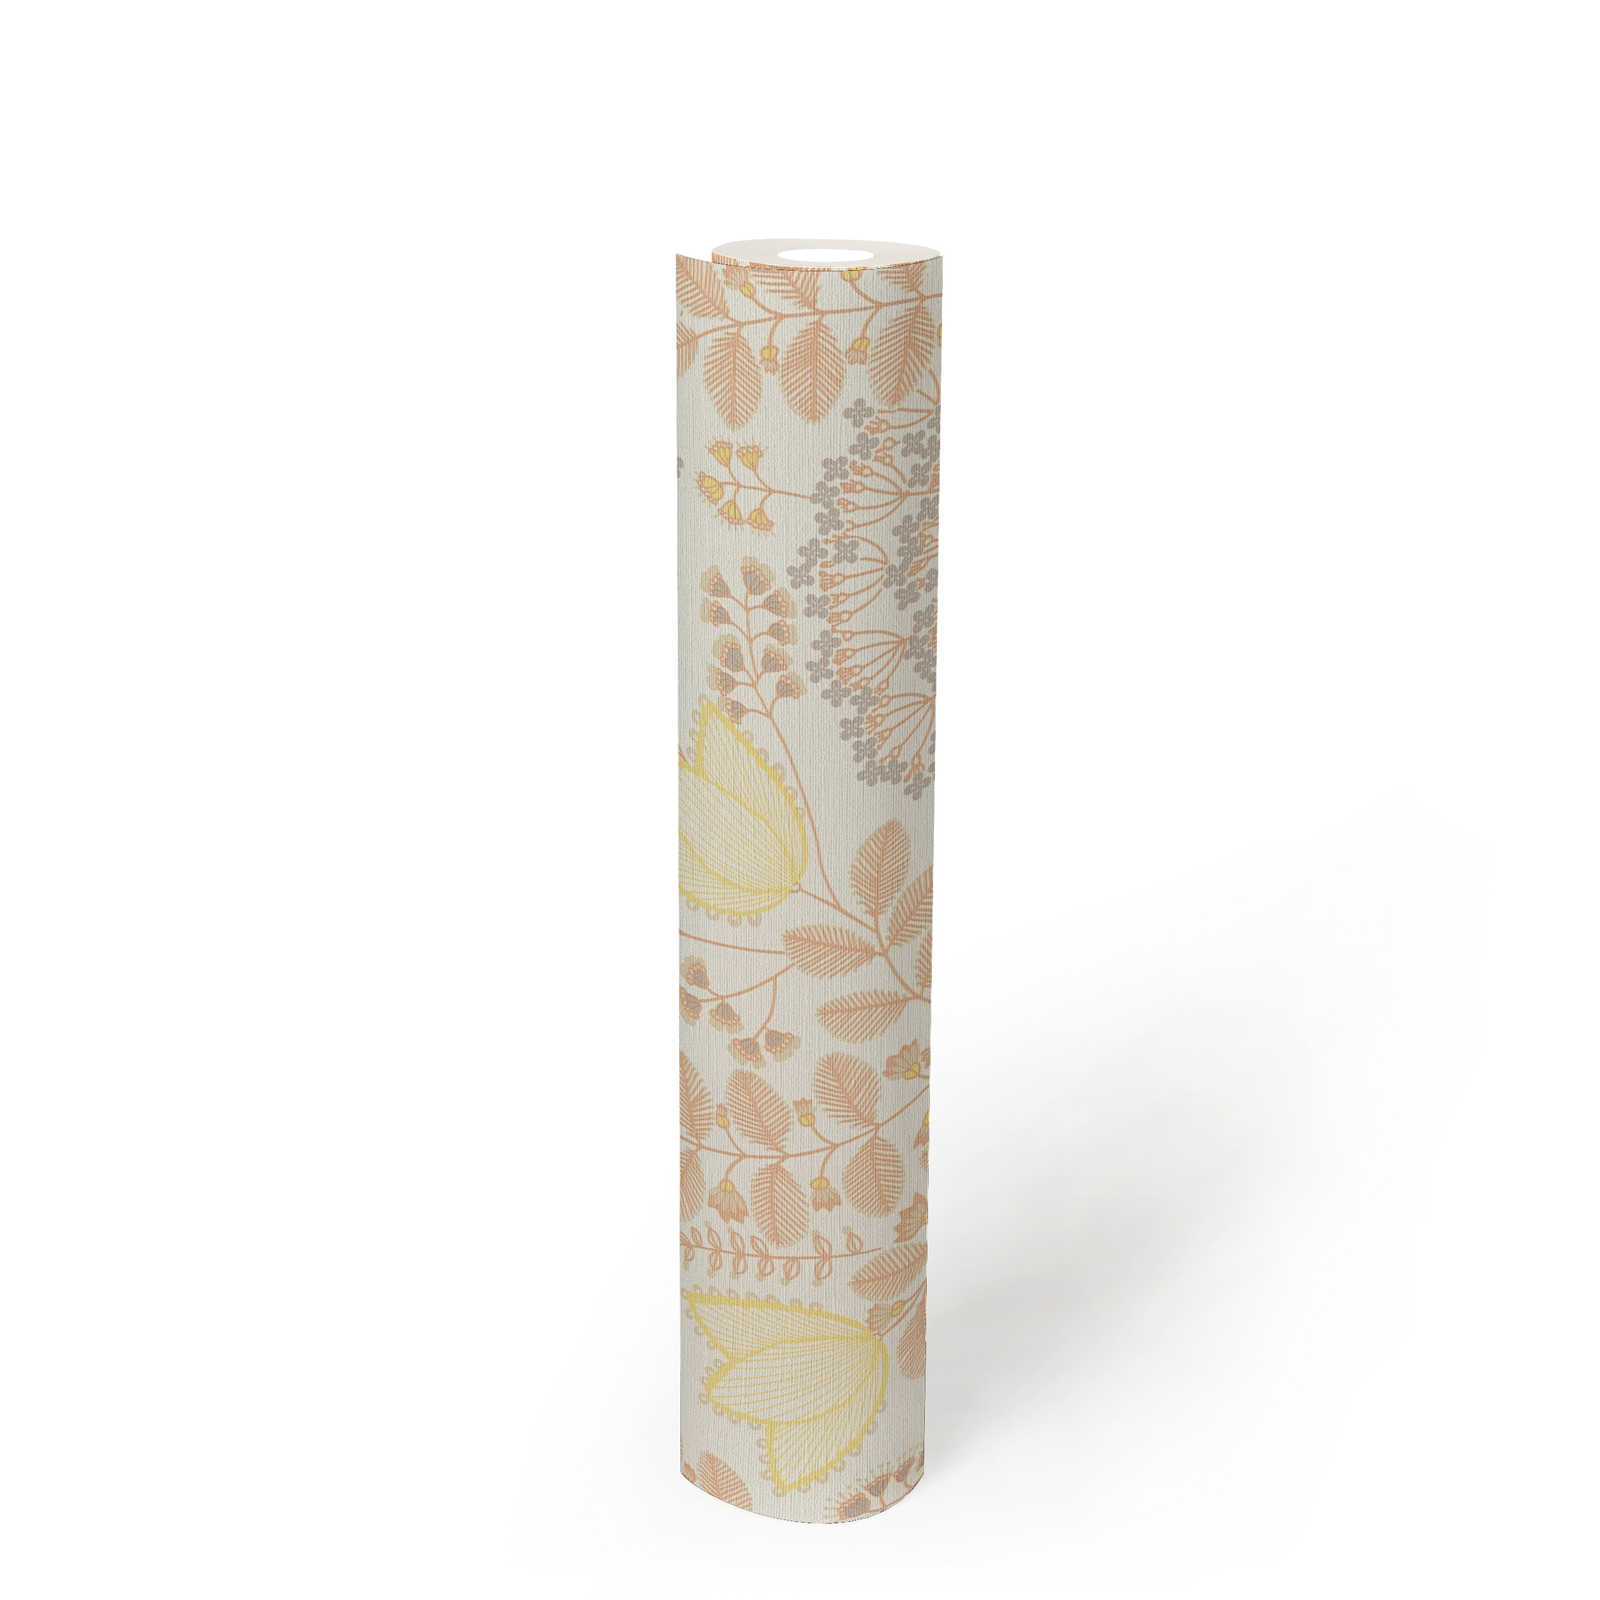             Florale Tapete mit Blättern im Retro-Stil leicht strukturiert, matt – Weiß, Orange, Gelb
        